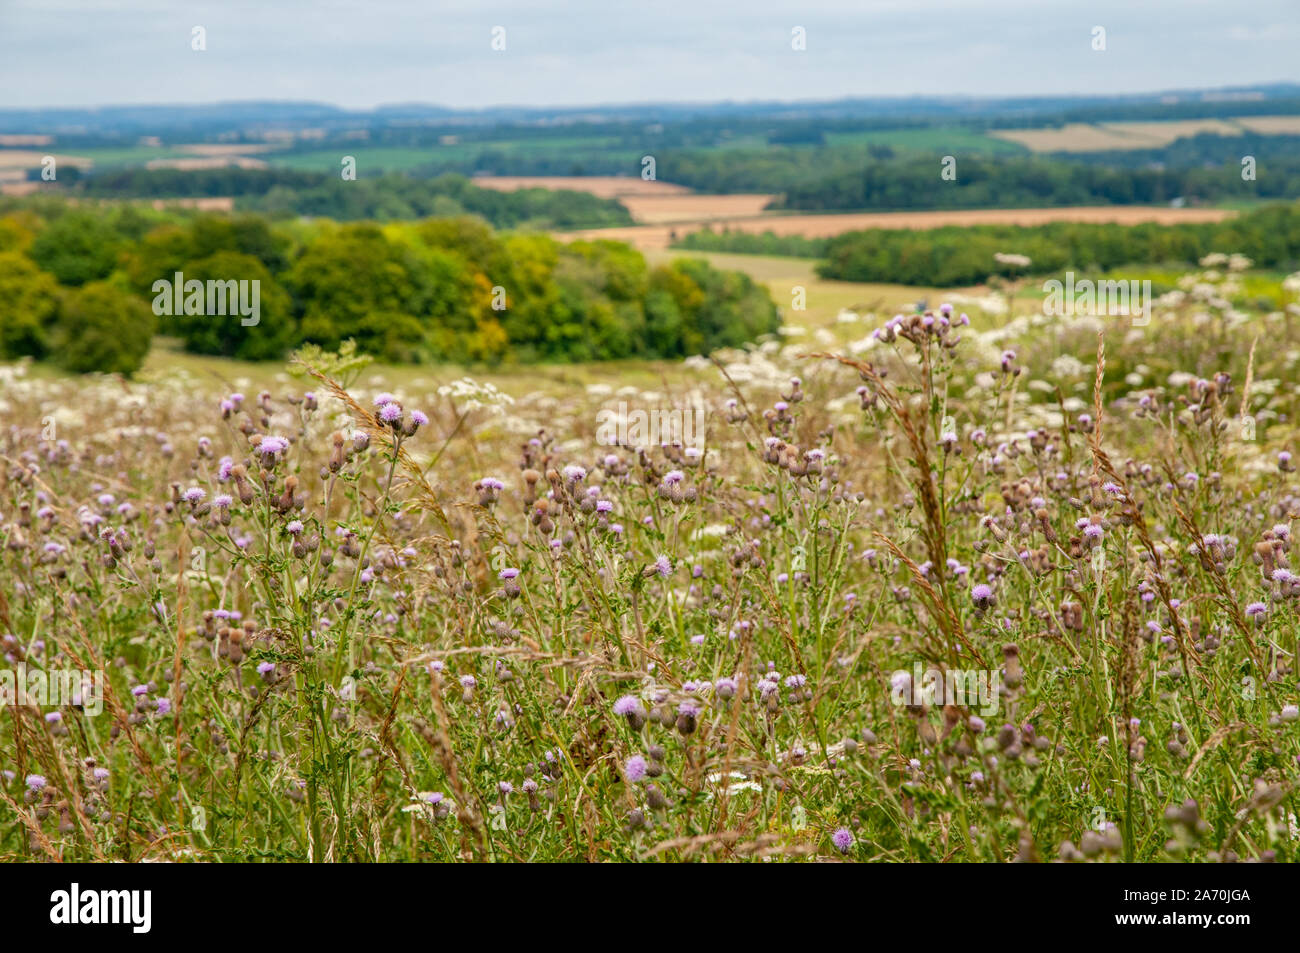 Fiori Selvatici con Hampshire rurali paesaggio di colline coltivate e boschi in background. Foto Stock